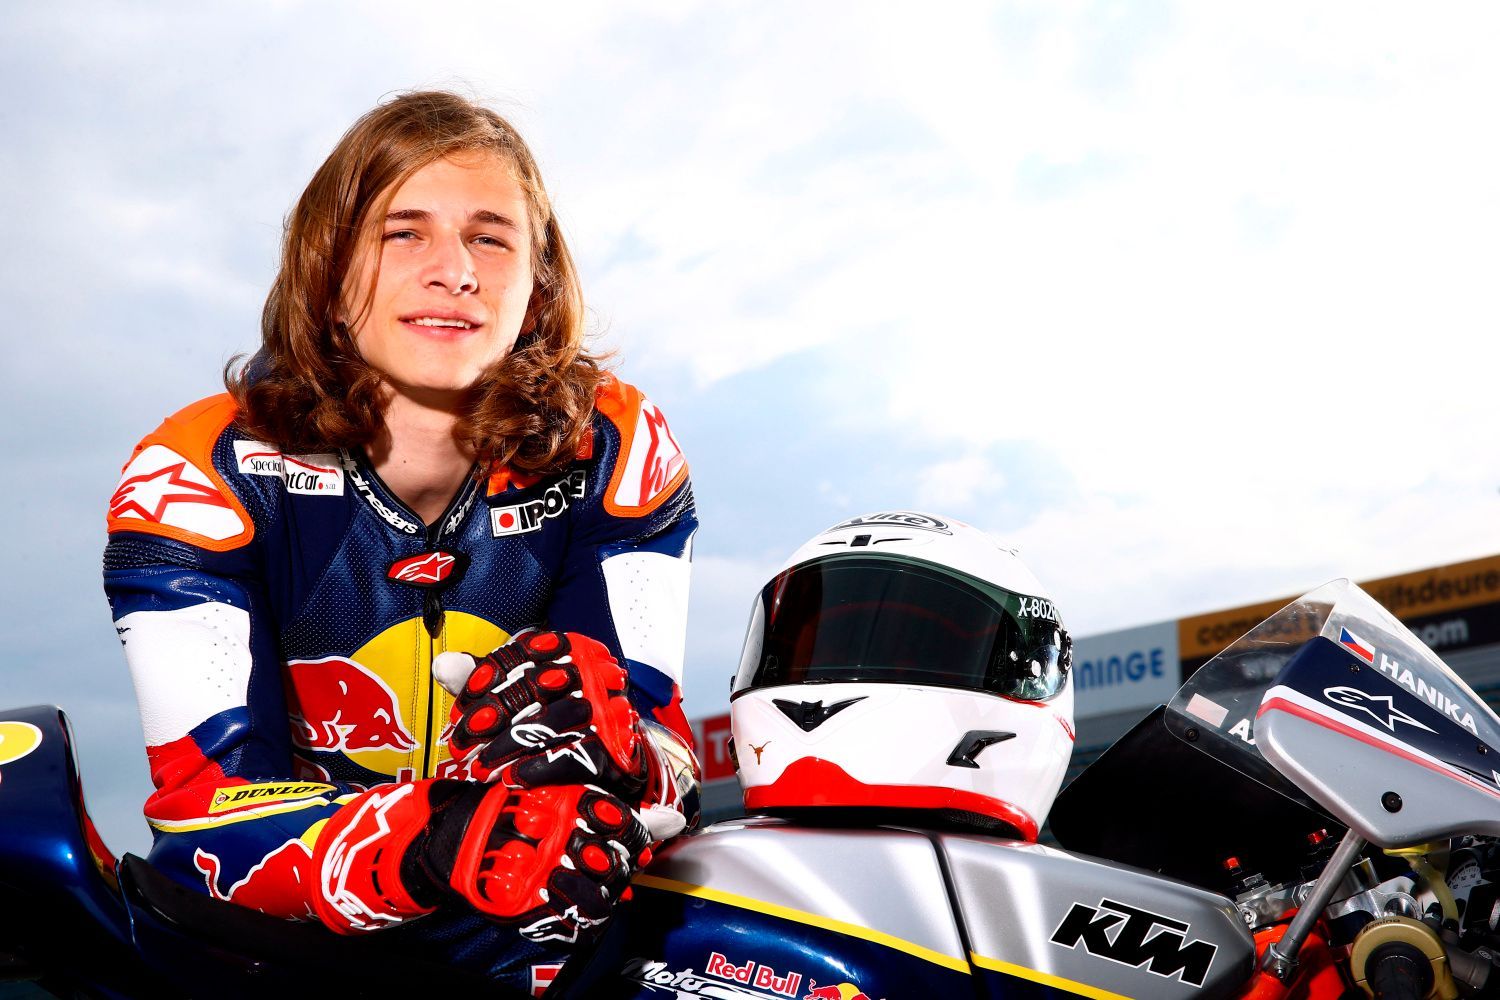 Karel Hanika, Red Bull Moto GP Rookies Cup